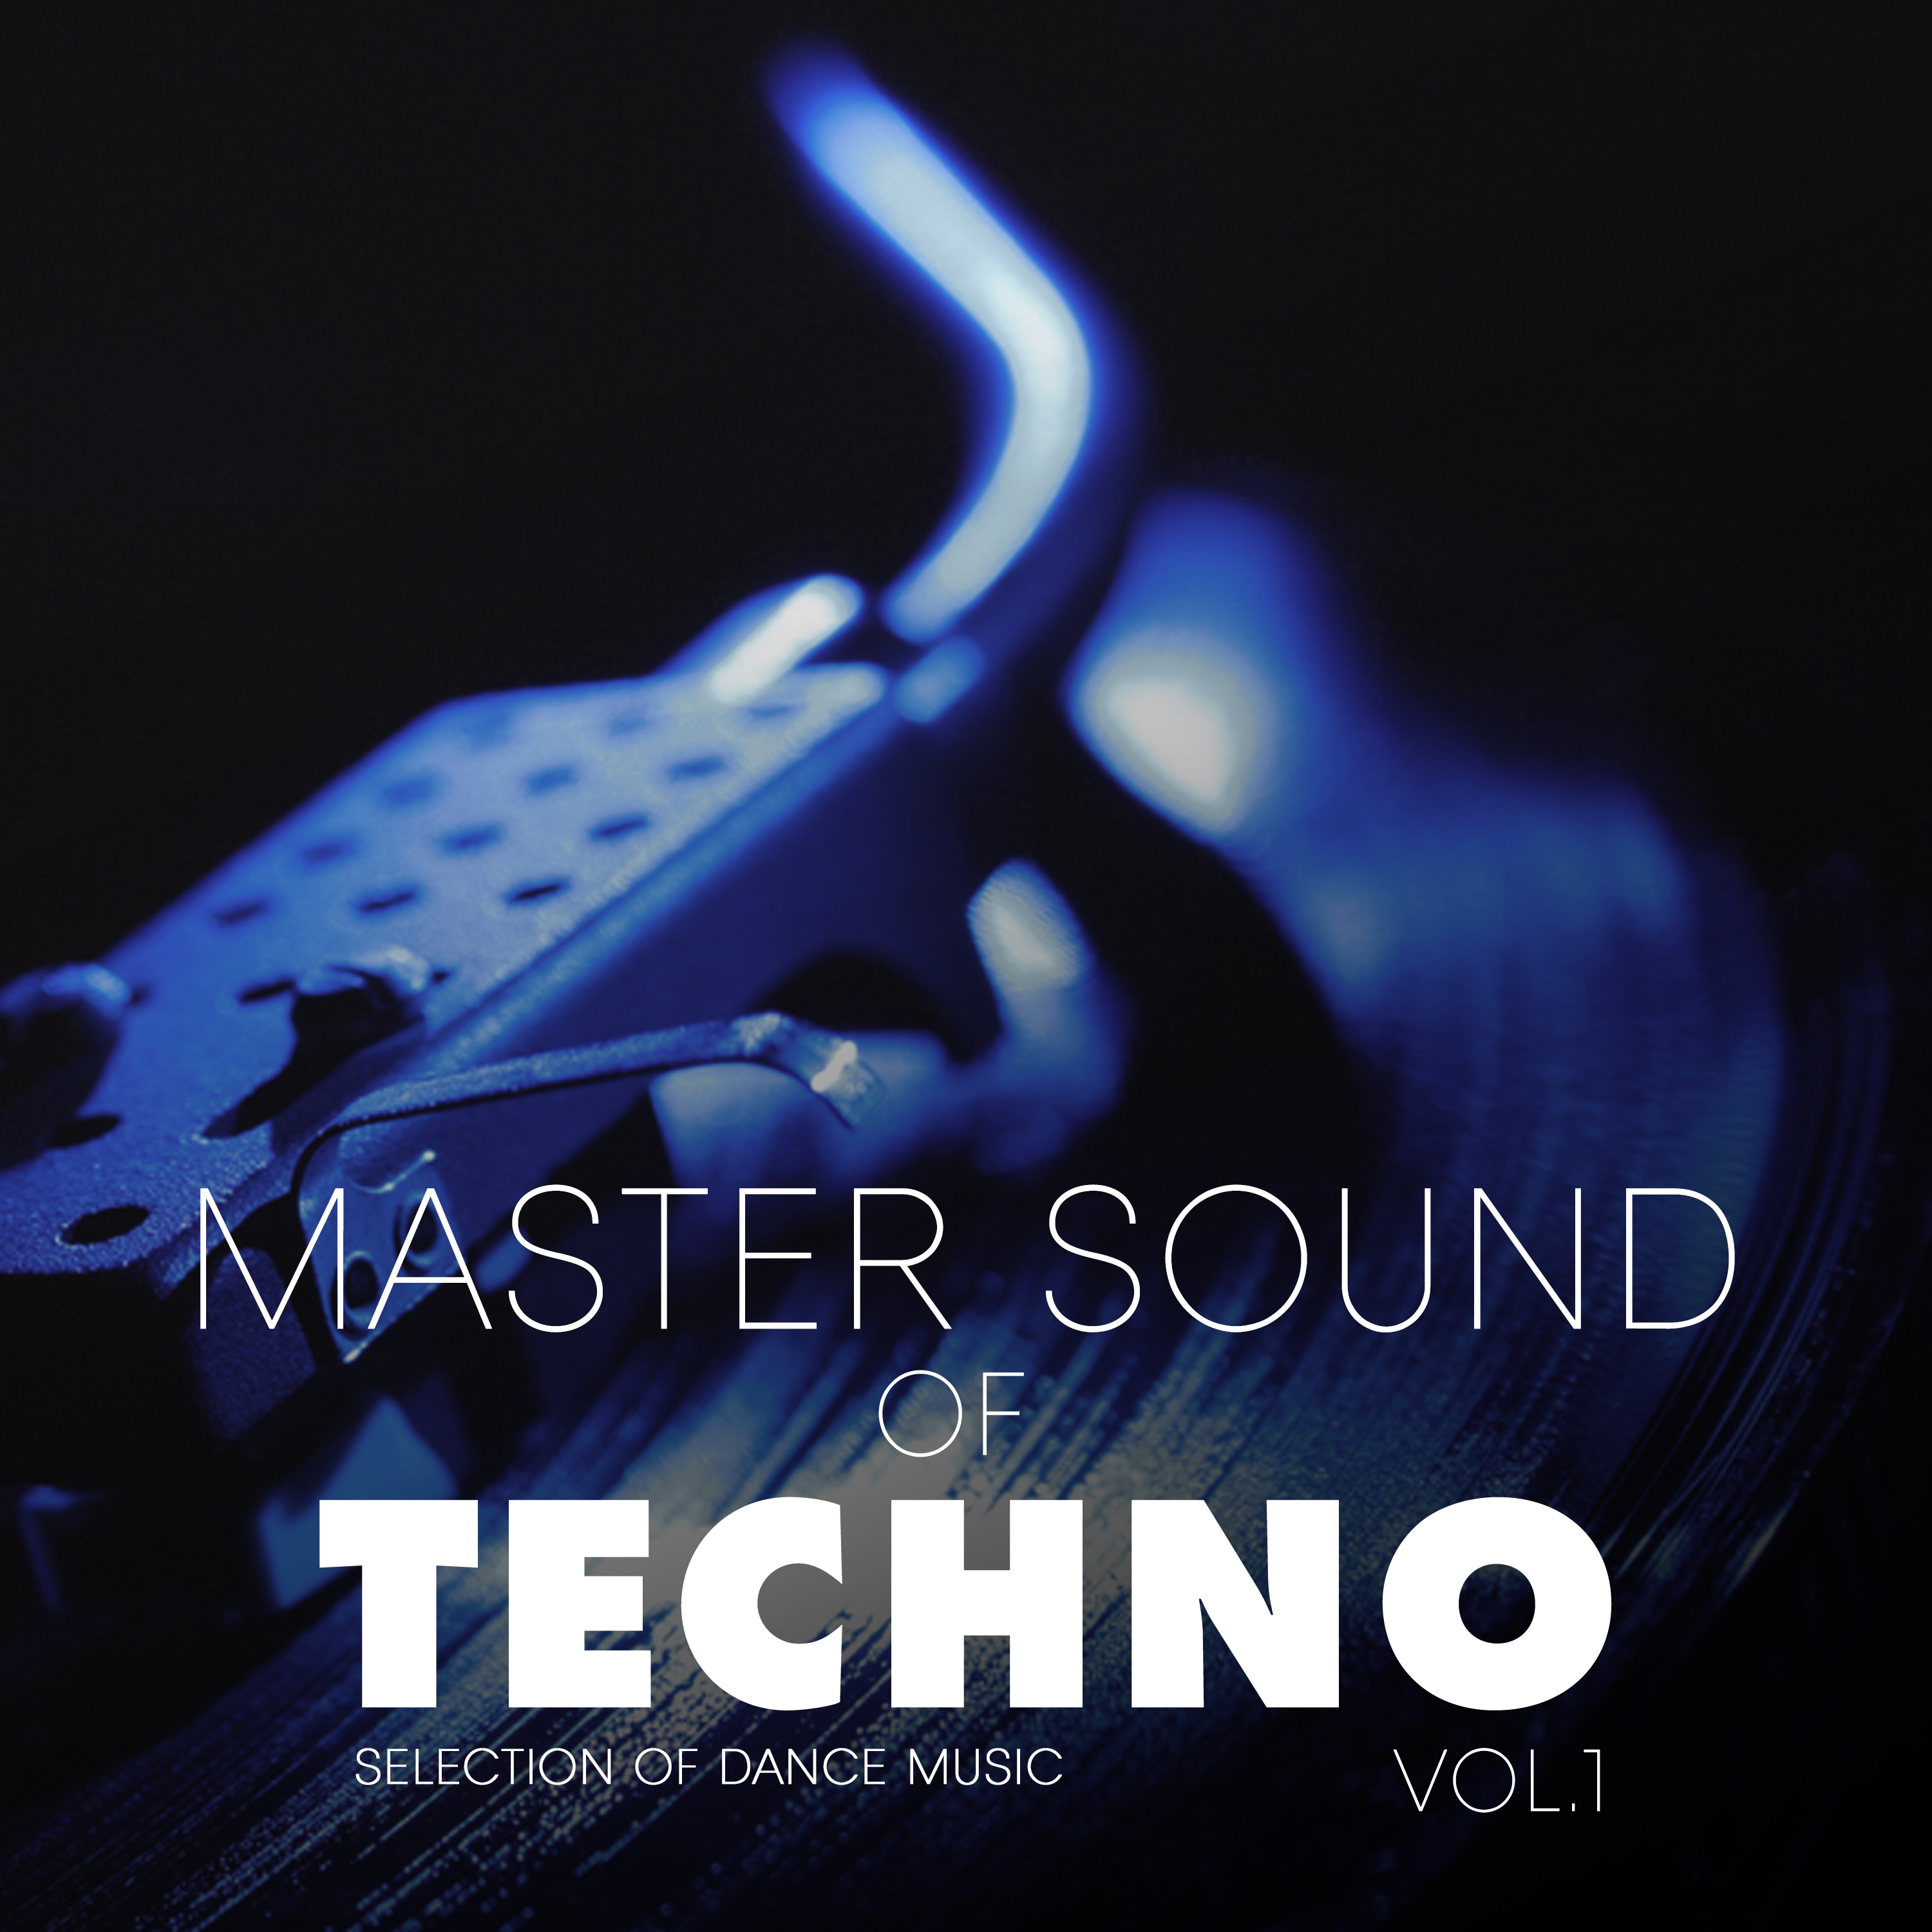 Master Sound of Techno, Vol. 1